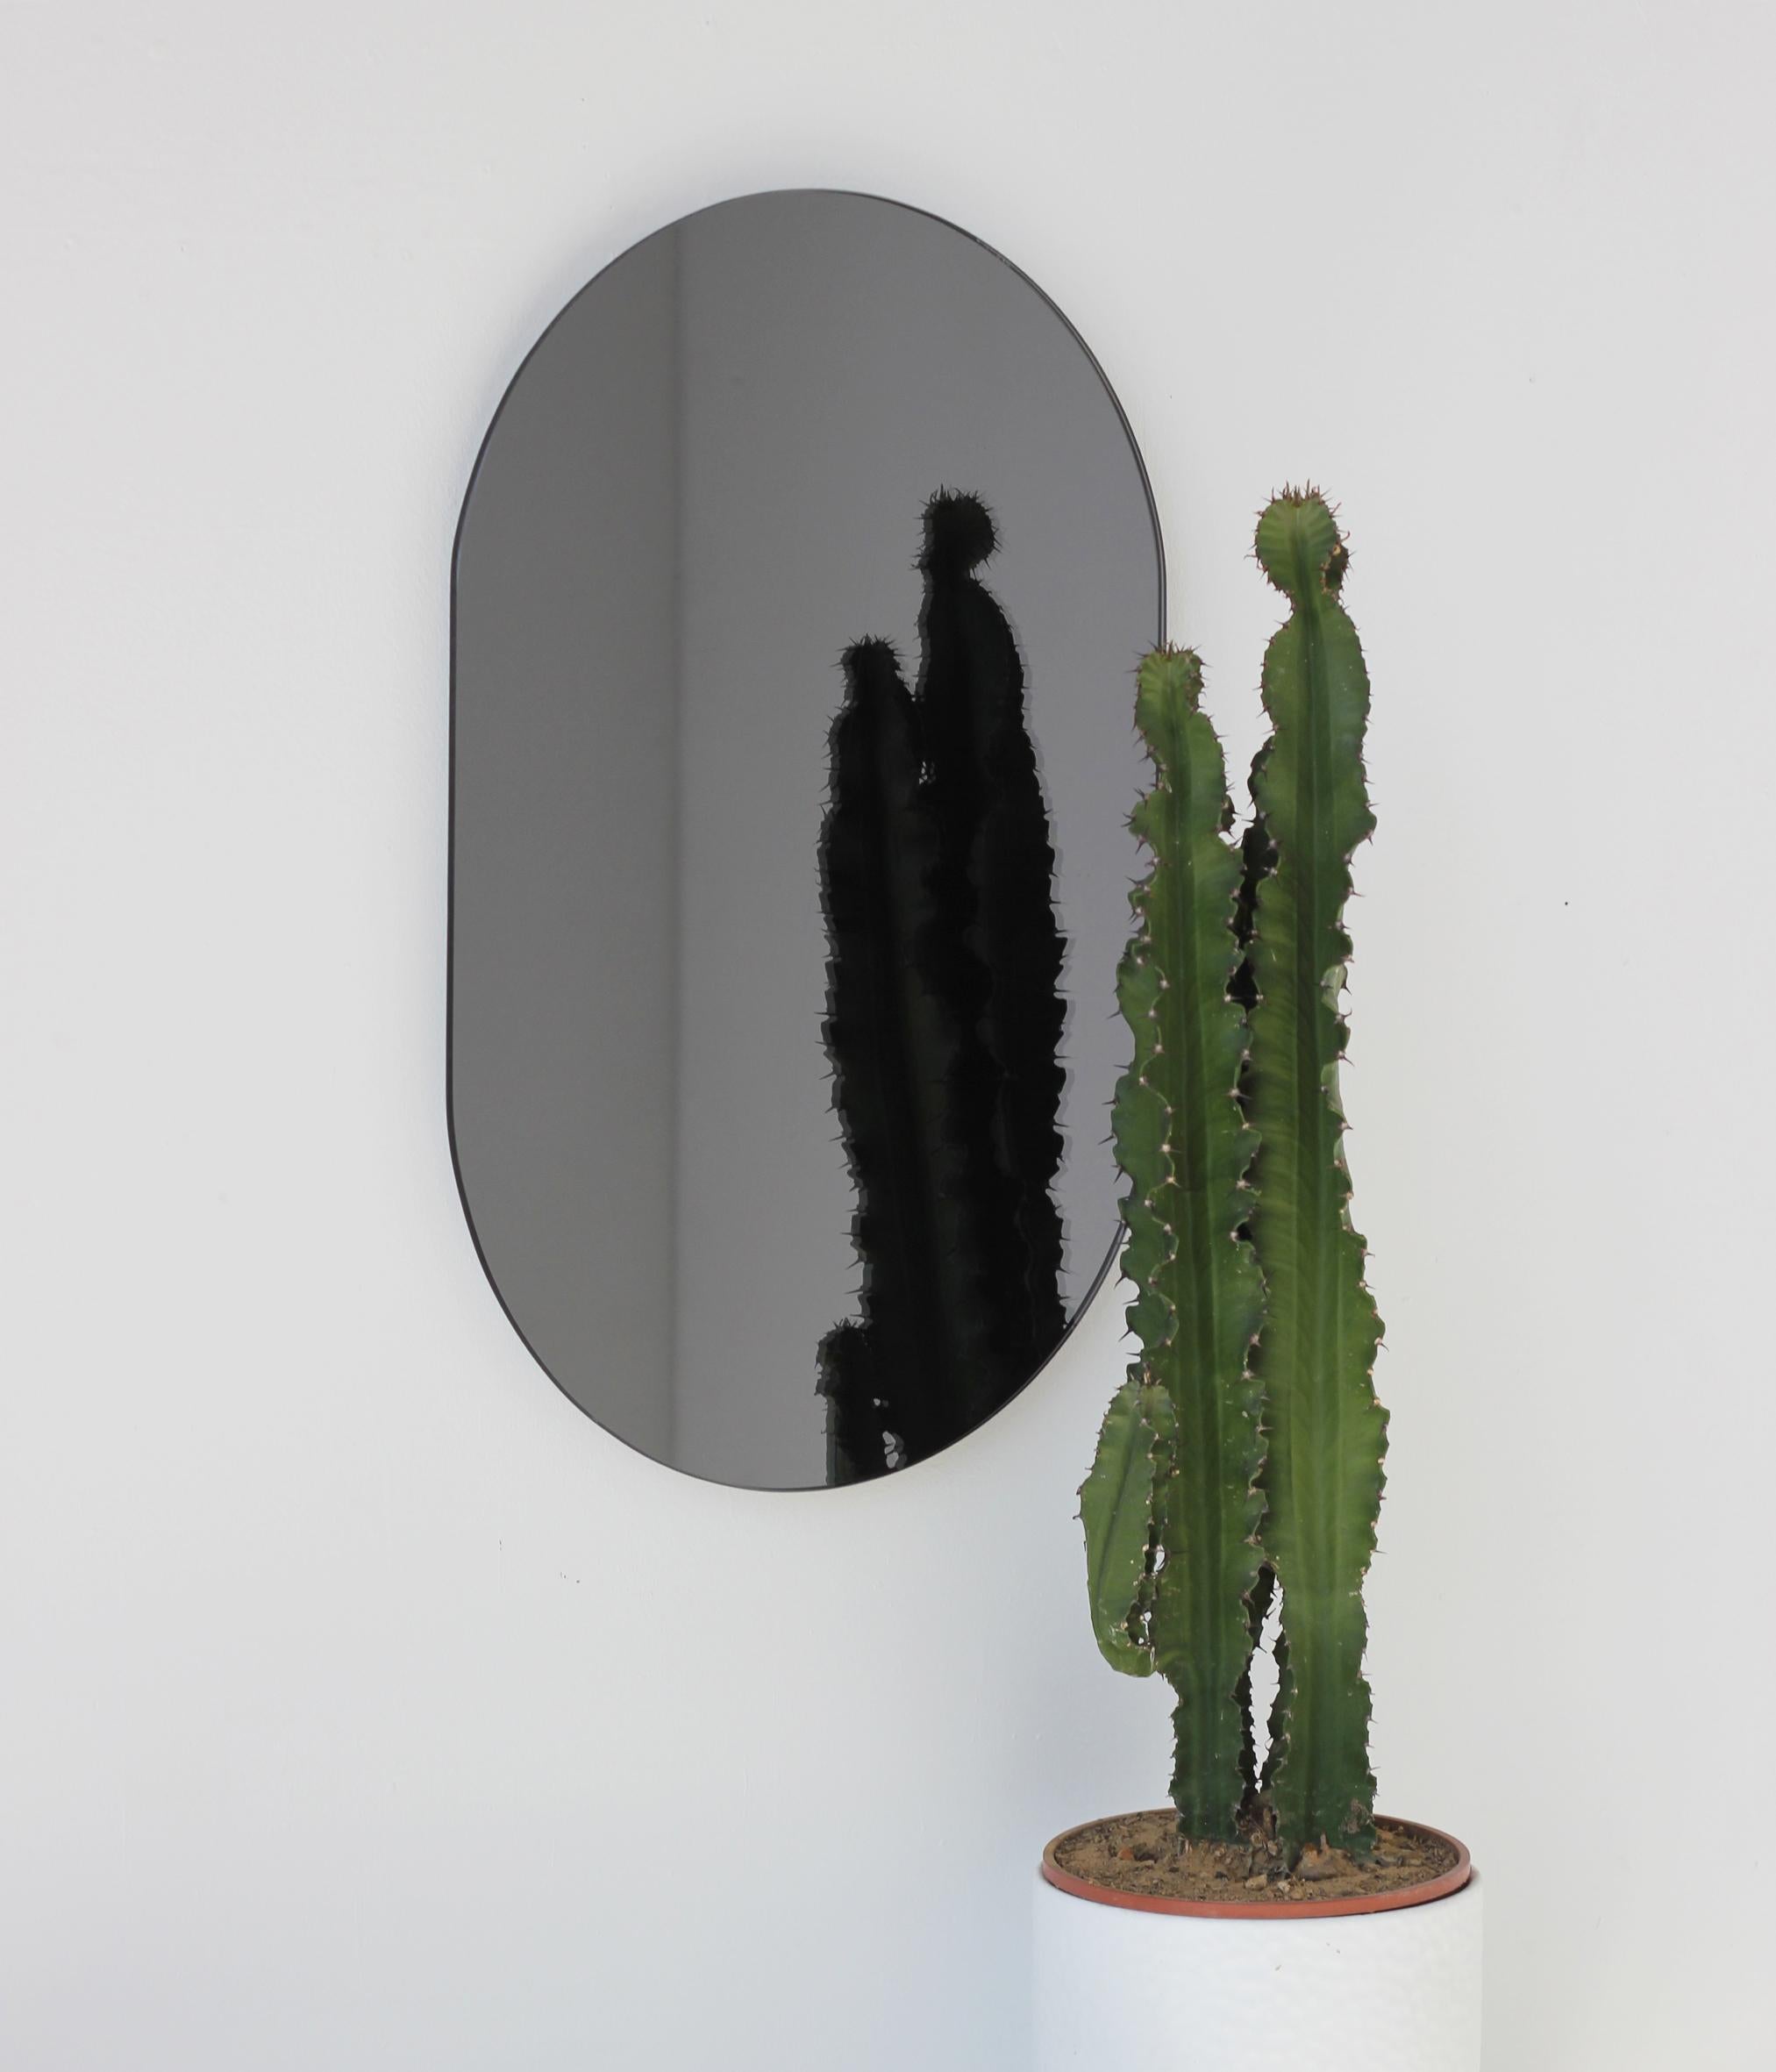 Minimalistischer, kapselförmiger, schwarz getönter, rahmenloser Spiegel. Hochwertiges Design, das dafür sorgt, dass der Spiegel perfekt parallel zur Wand steht. Entworfen und hergestellt in London, UK.

Ausgestattet mit professionellen Platten, die